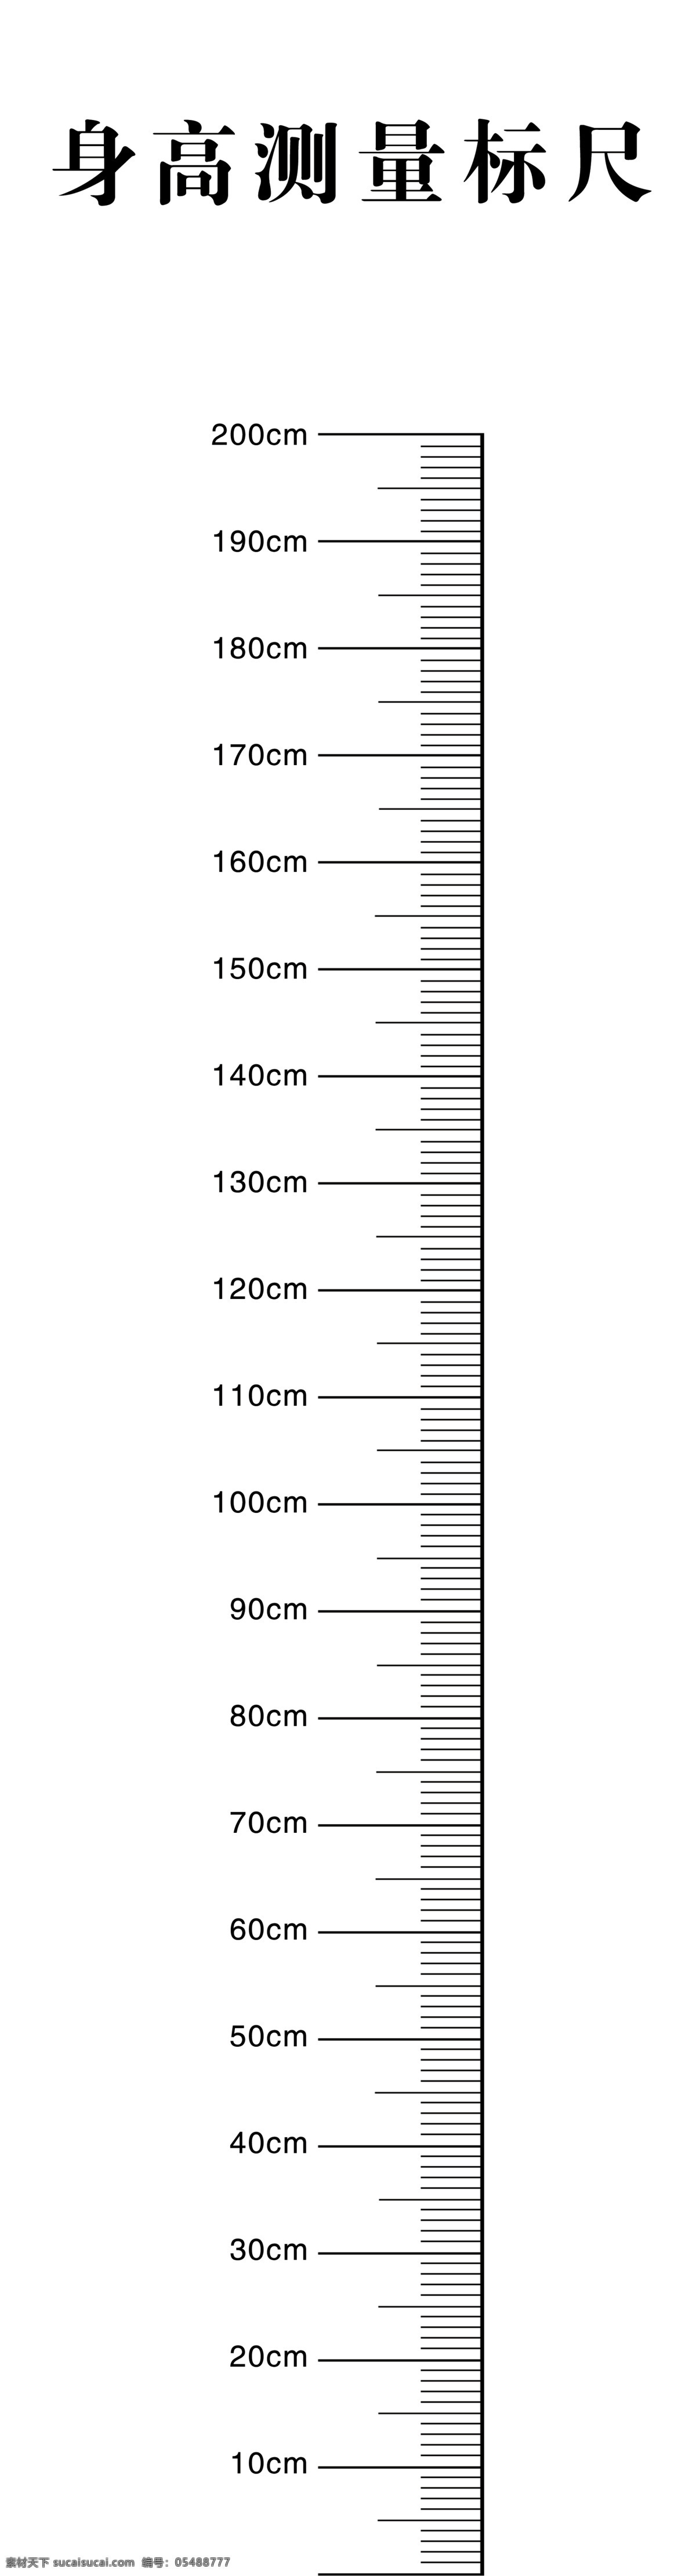 标尺 尺寸 身高测量标尺 身高表 测量标尺 分层